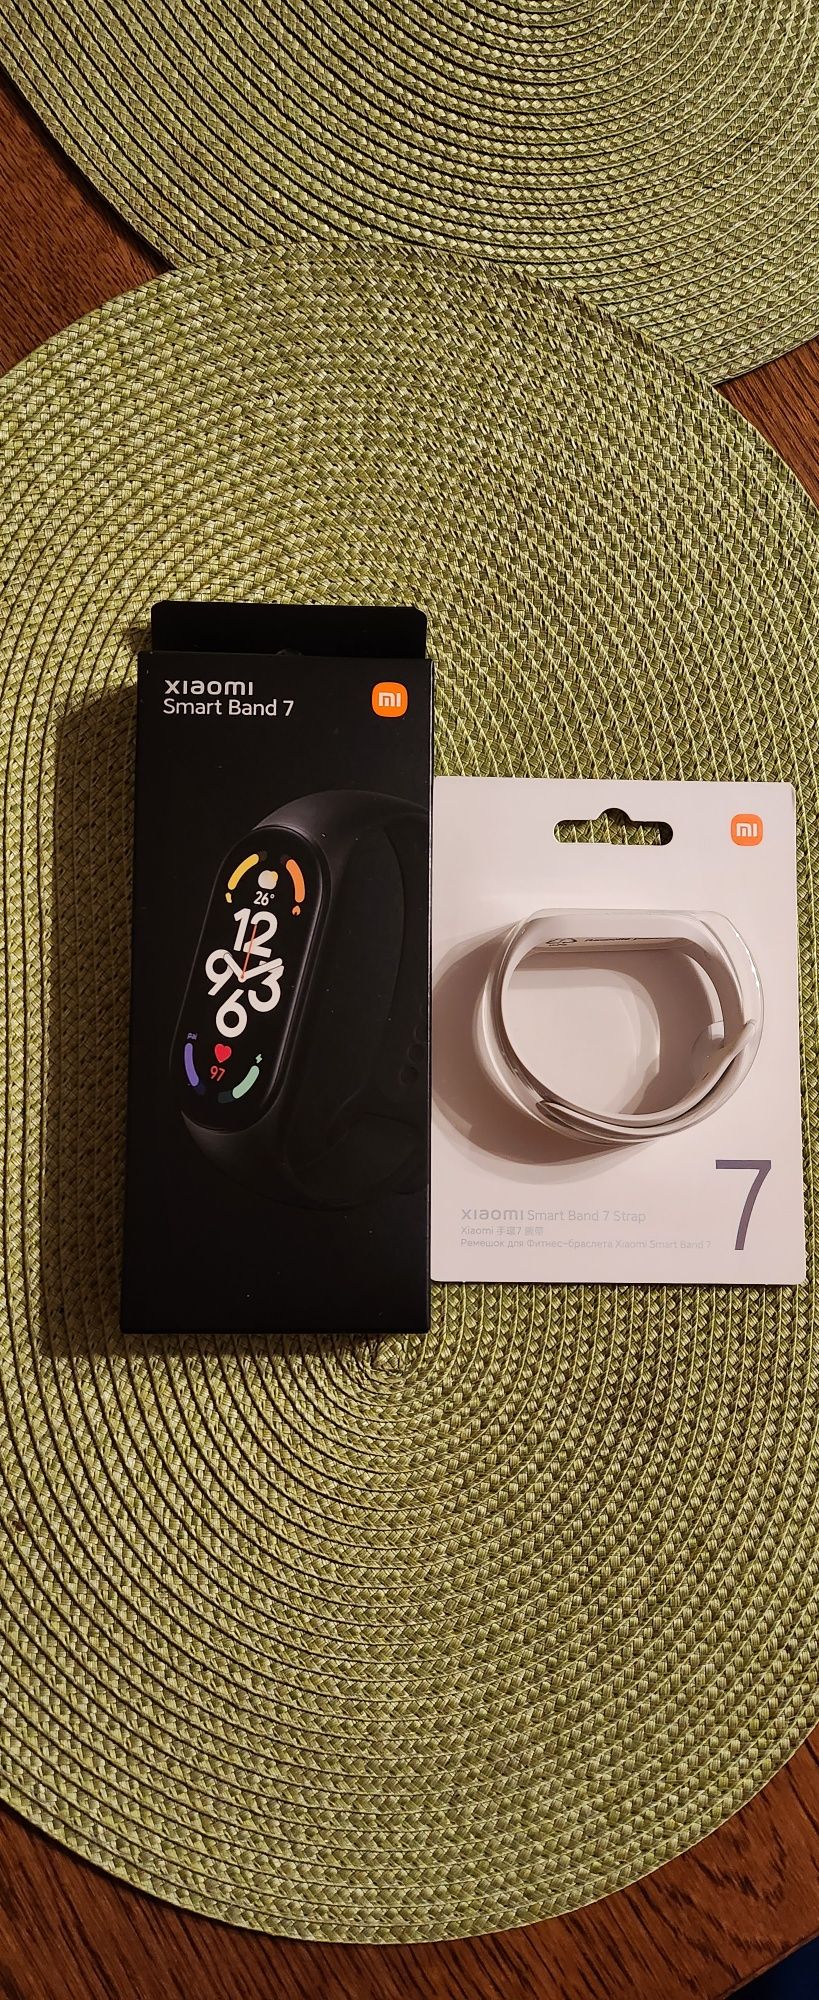 Xiaomi Smart Band 7 + pasek.   Nowy!